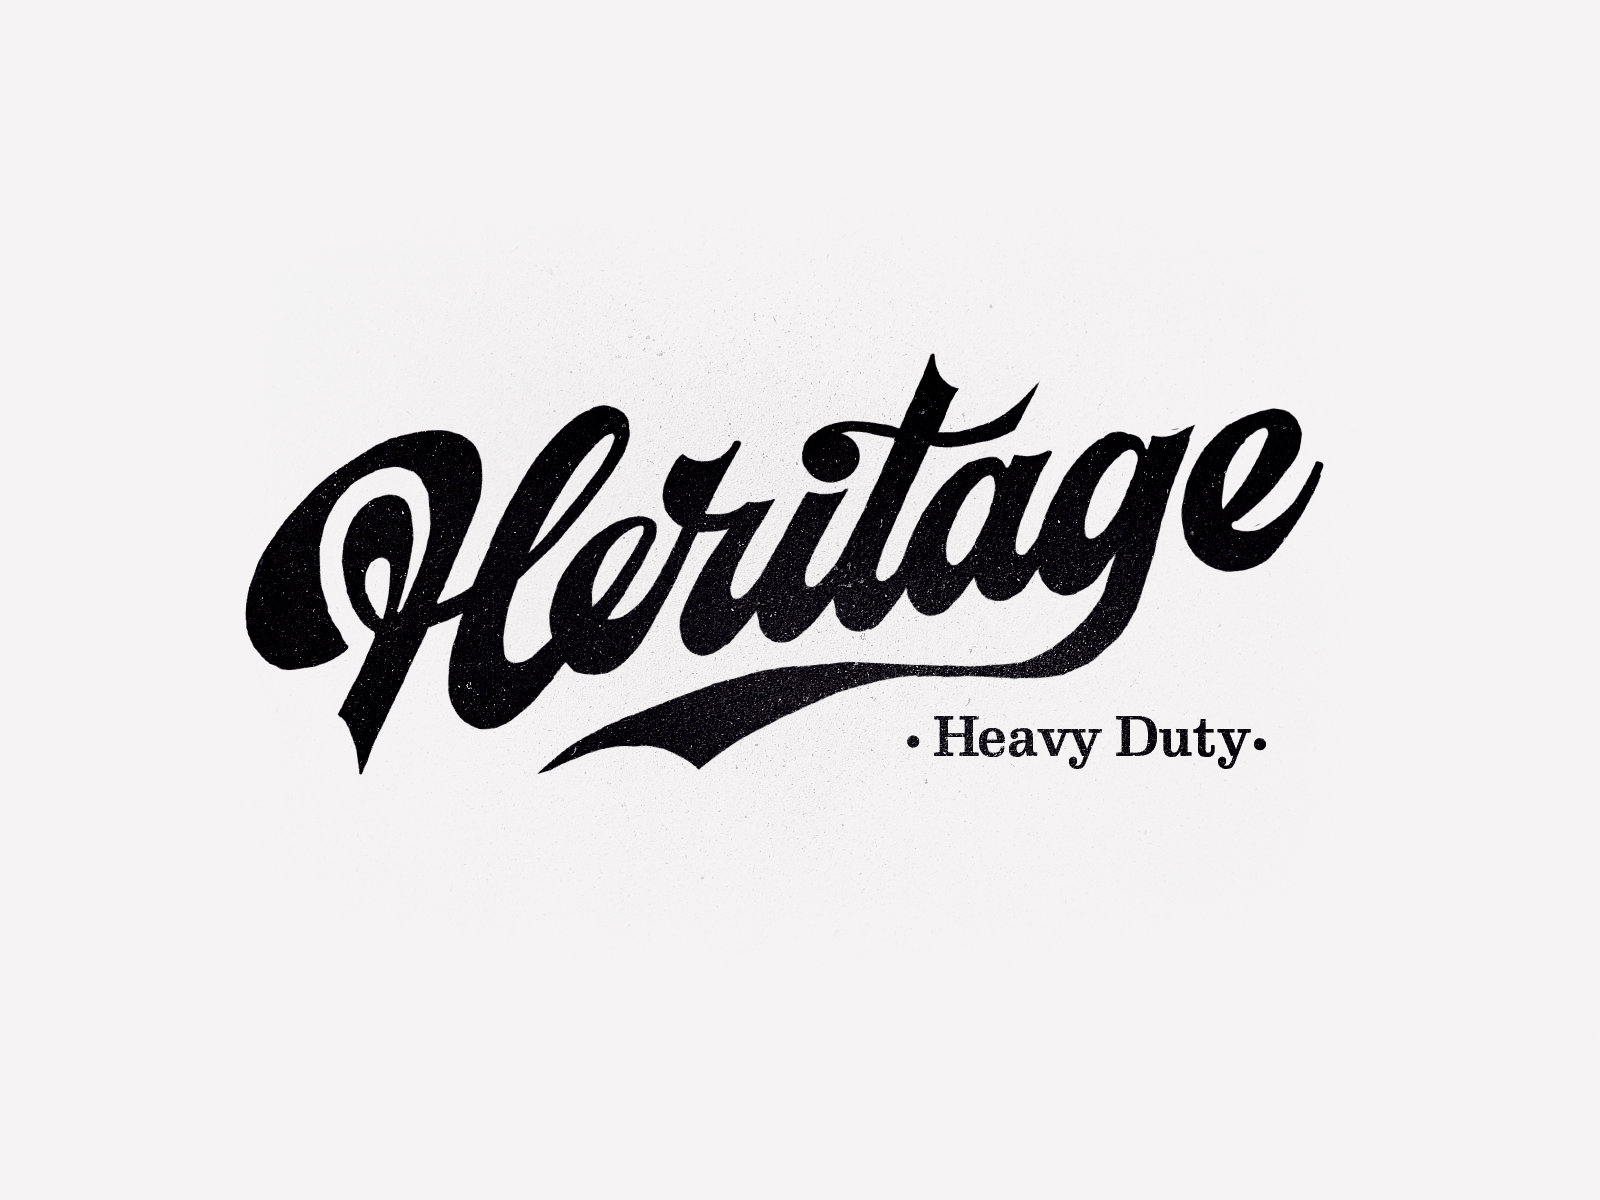 Heritage Heavy Duty by ForSureLetters on Dribbble